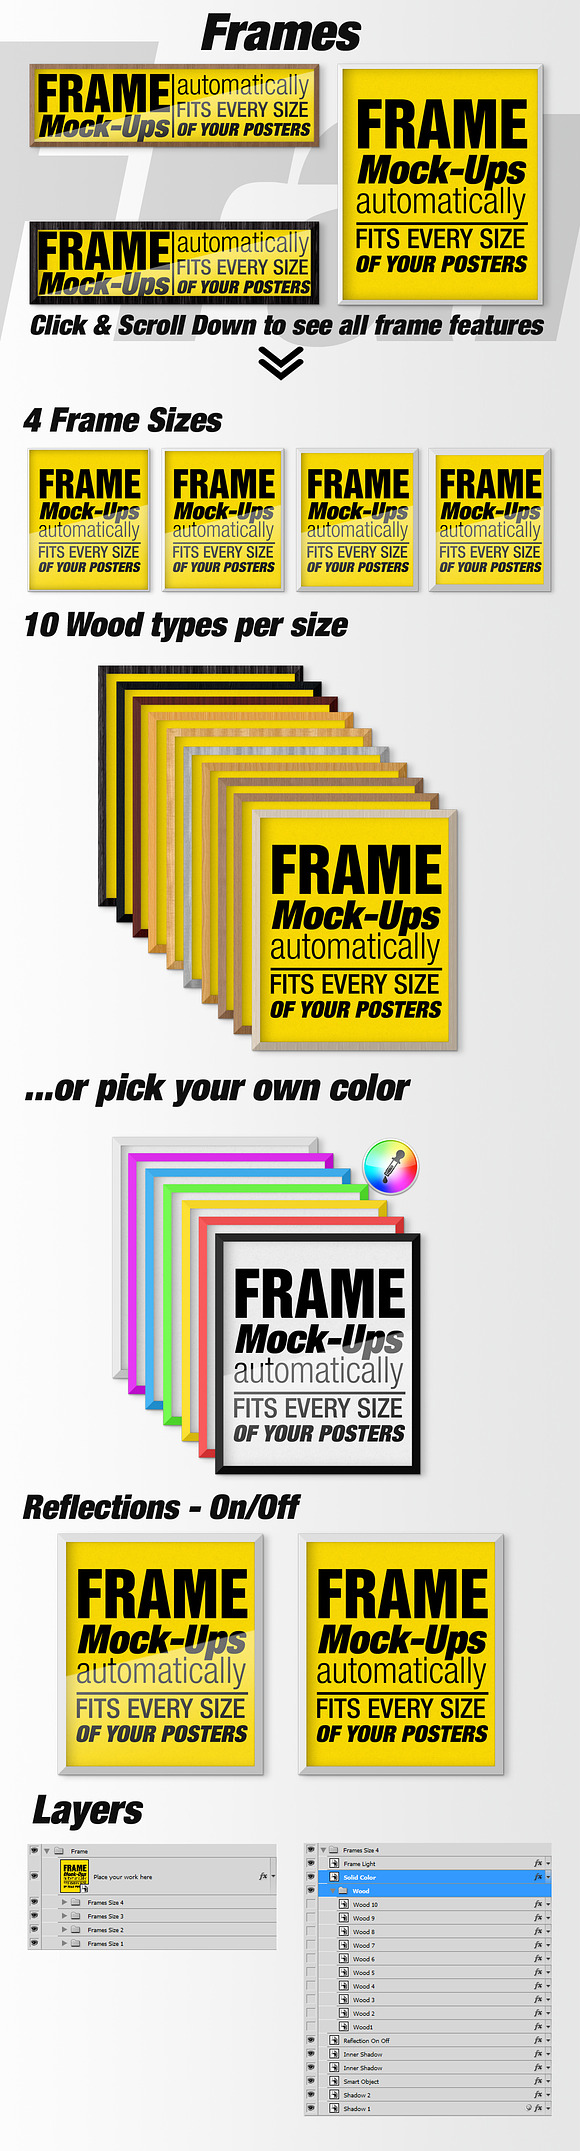 Canvas Mockups - Frames Mockups v 49 in Print Mockups - product preview 6